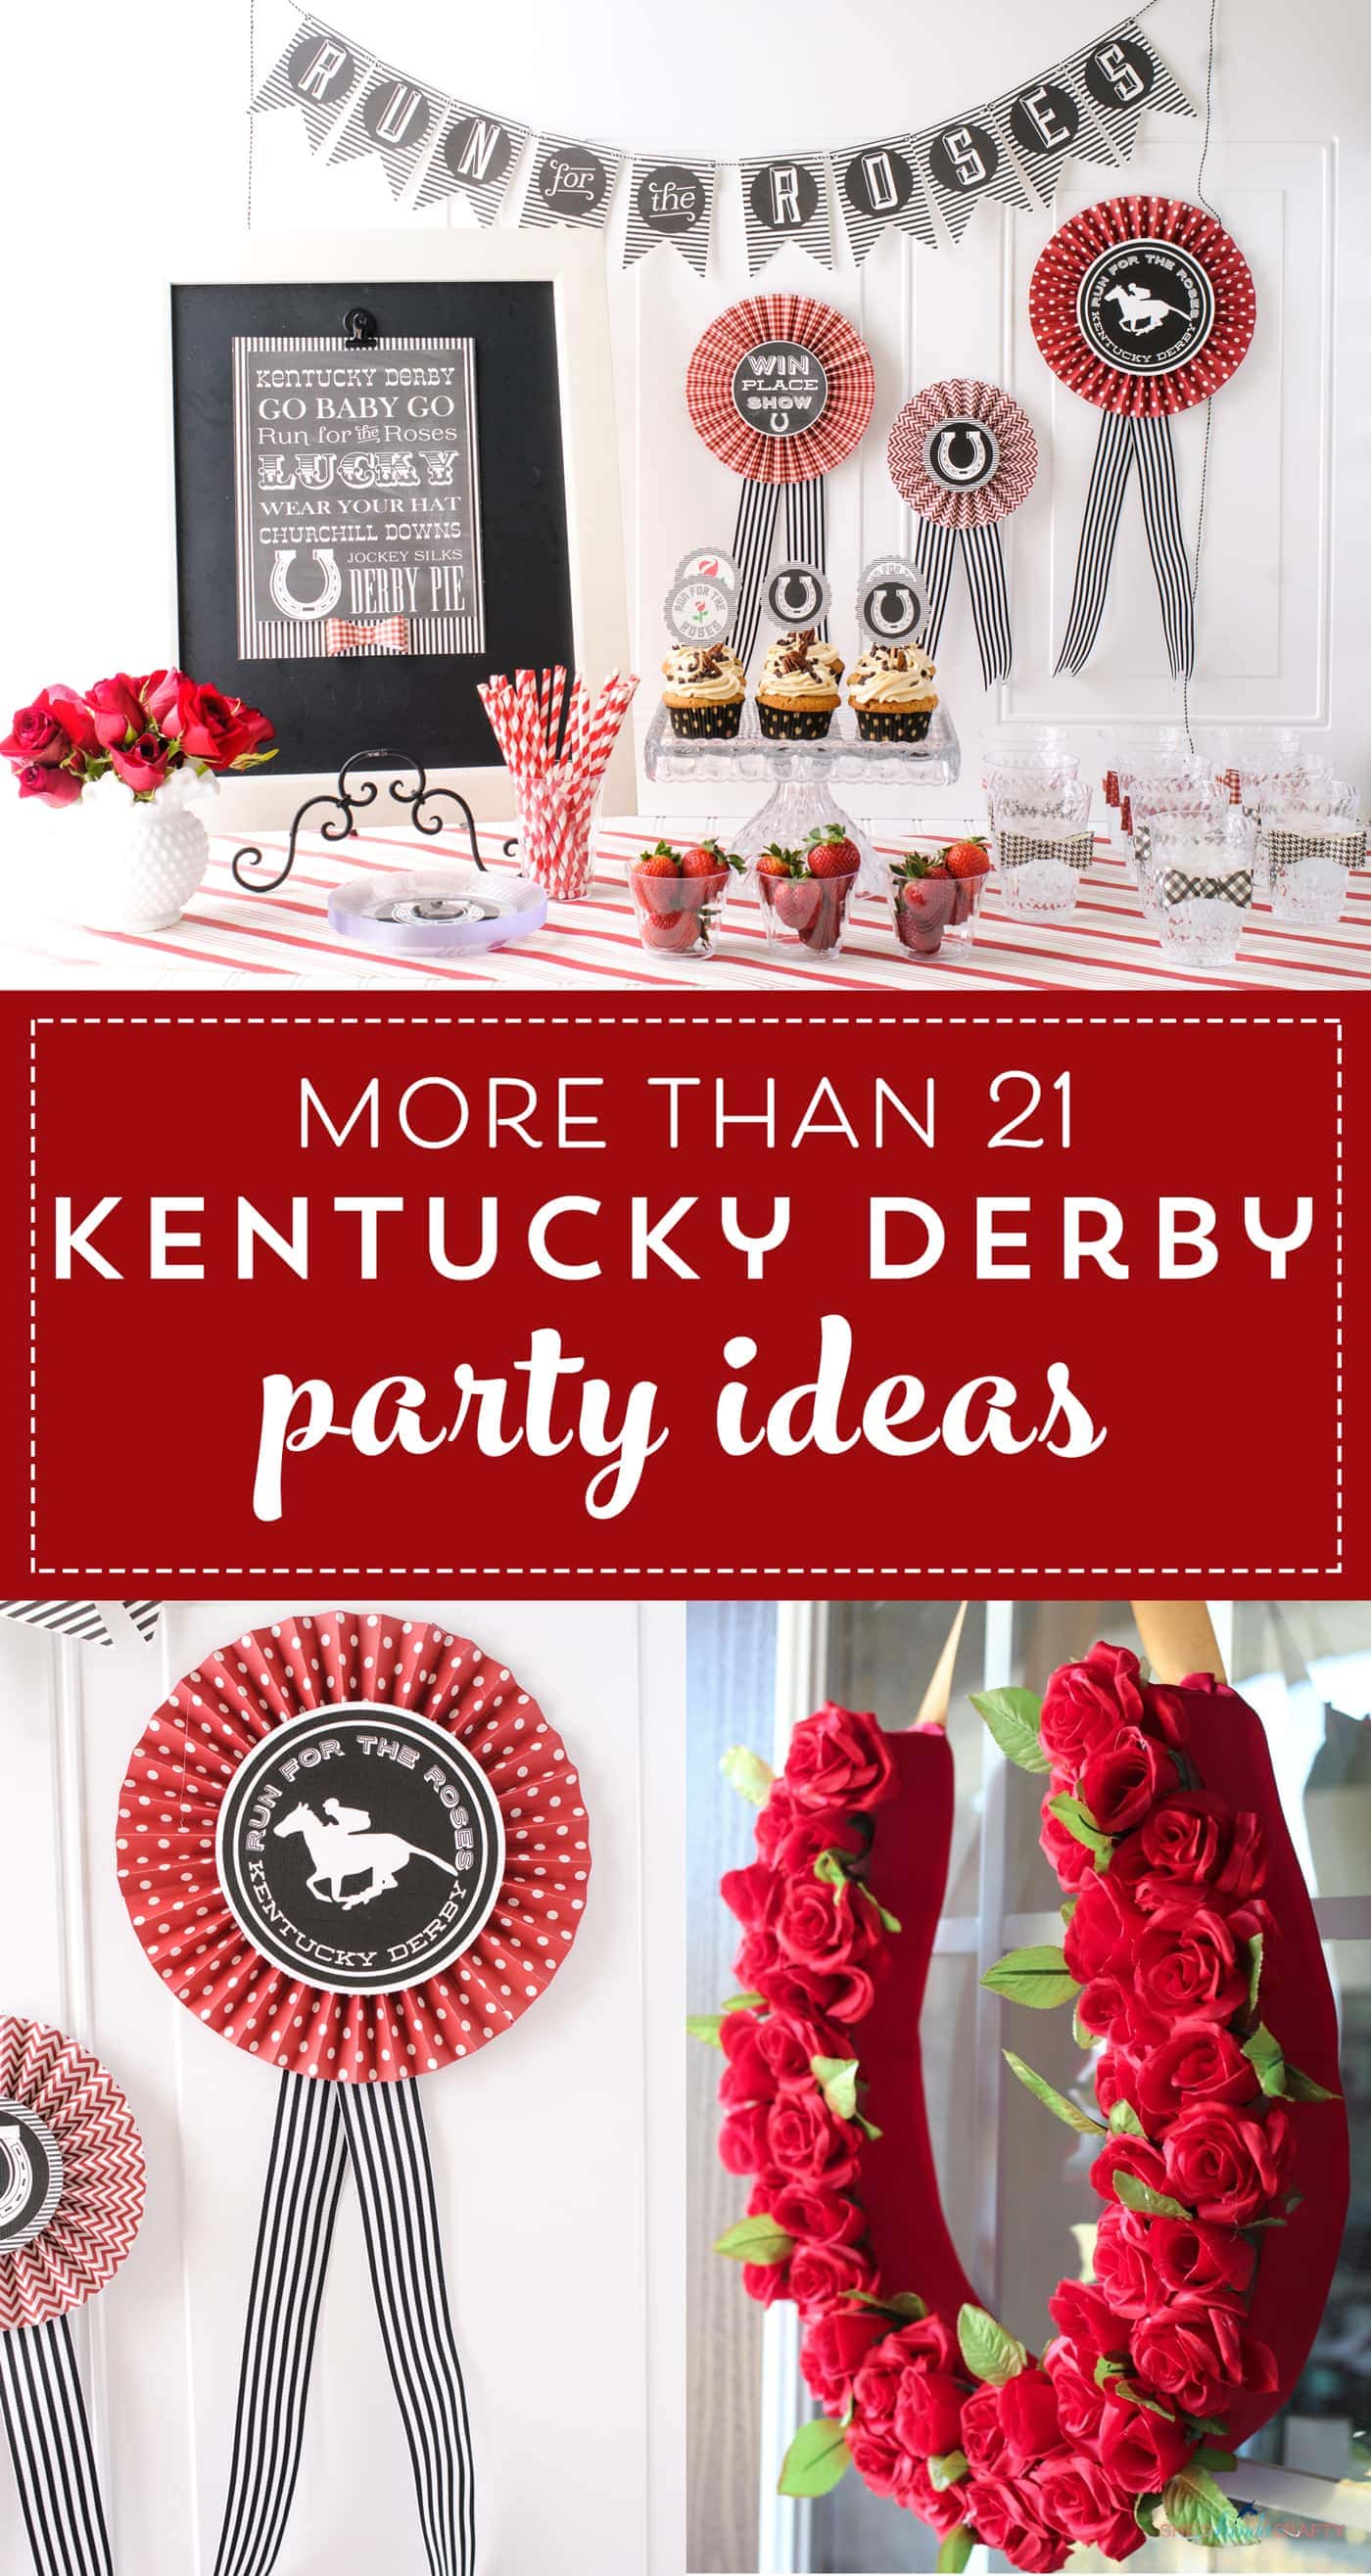 Décorations et idées imprimables de fête du Kentucky Derby - imprimables pour les invitations à une fête du Kentucky Derby et des idées d'artisanat #kentuckyderby #derby #derbyparty